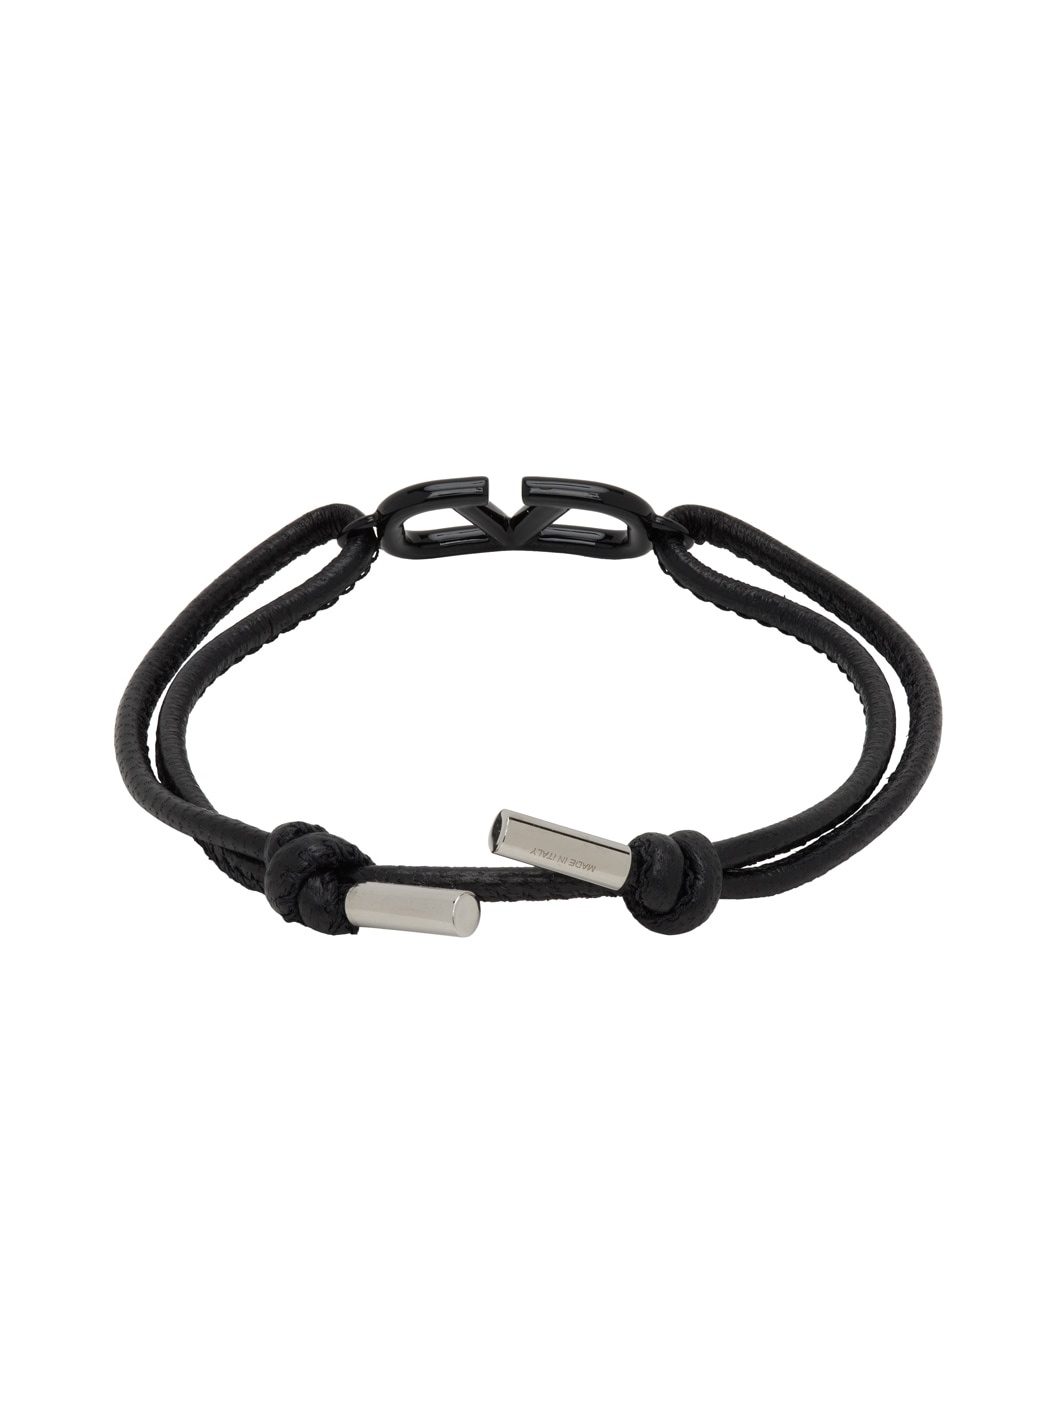 Black Leather VLogo Signature Bracelet - 2